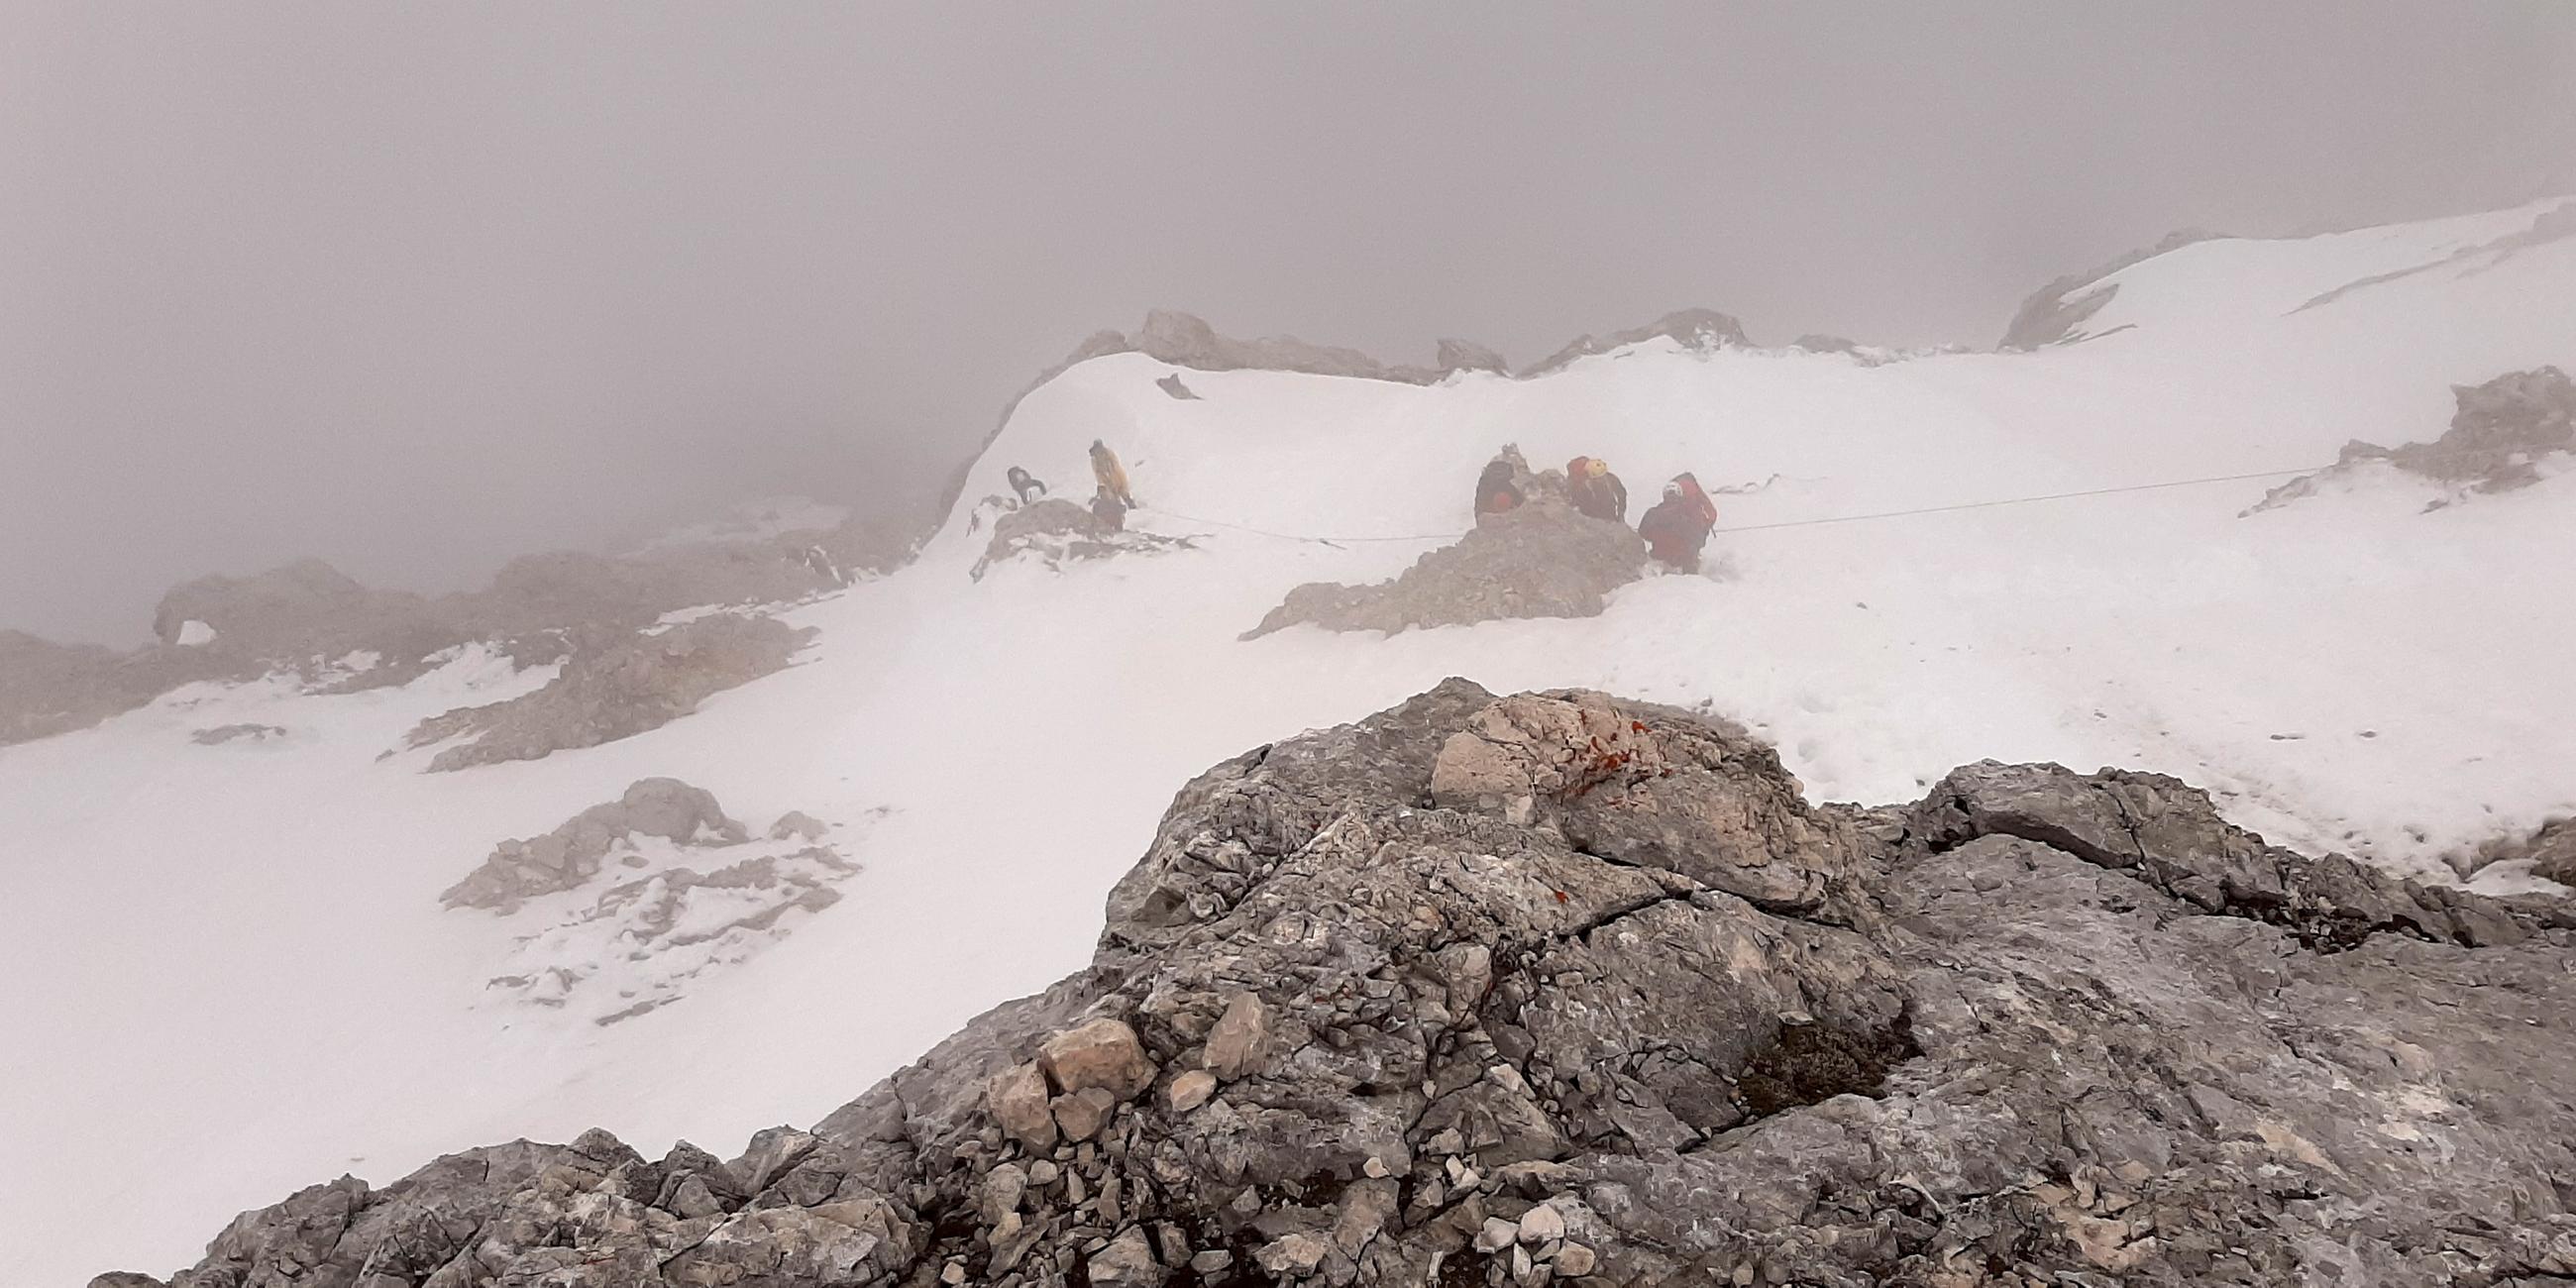 Bergretter der Bergwacht Grainau im Einsat